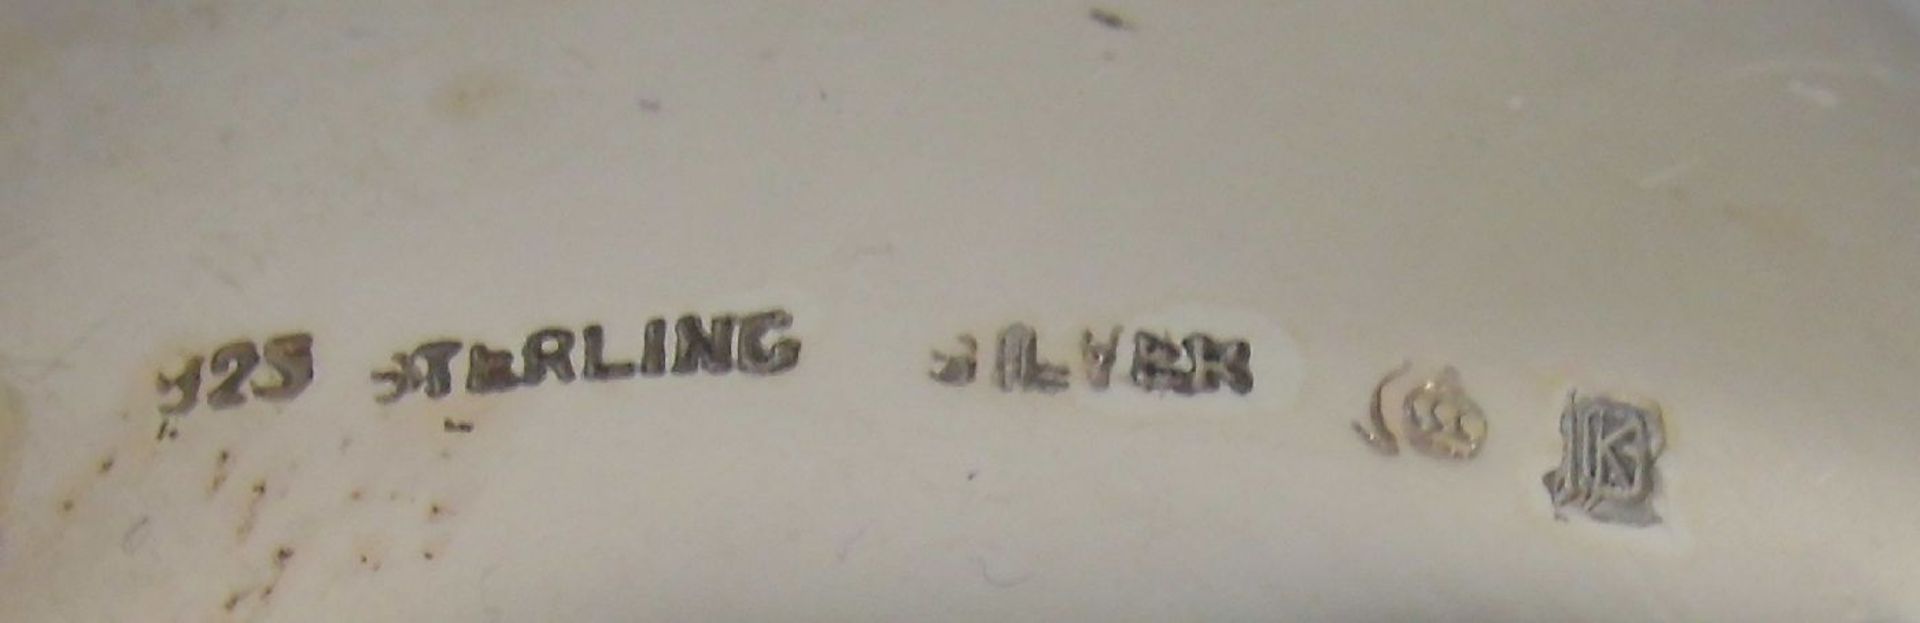 PAAR VASEN, 925er Silber (218 g), deutsch, gepunzt mit Halbmond und Krone, Feingehaltsangabe und - Bild 3 aus 3